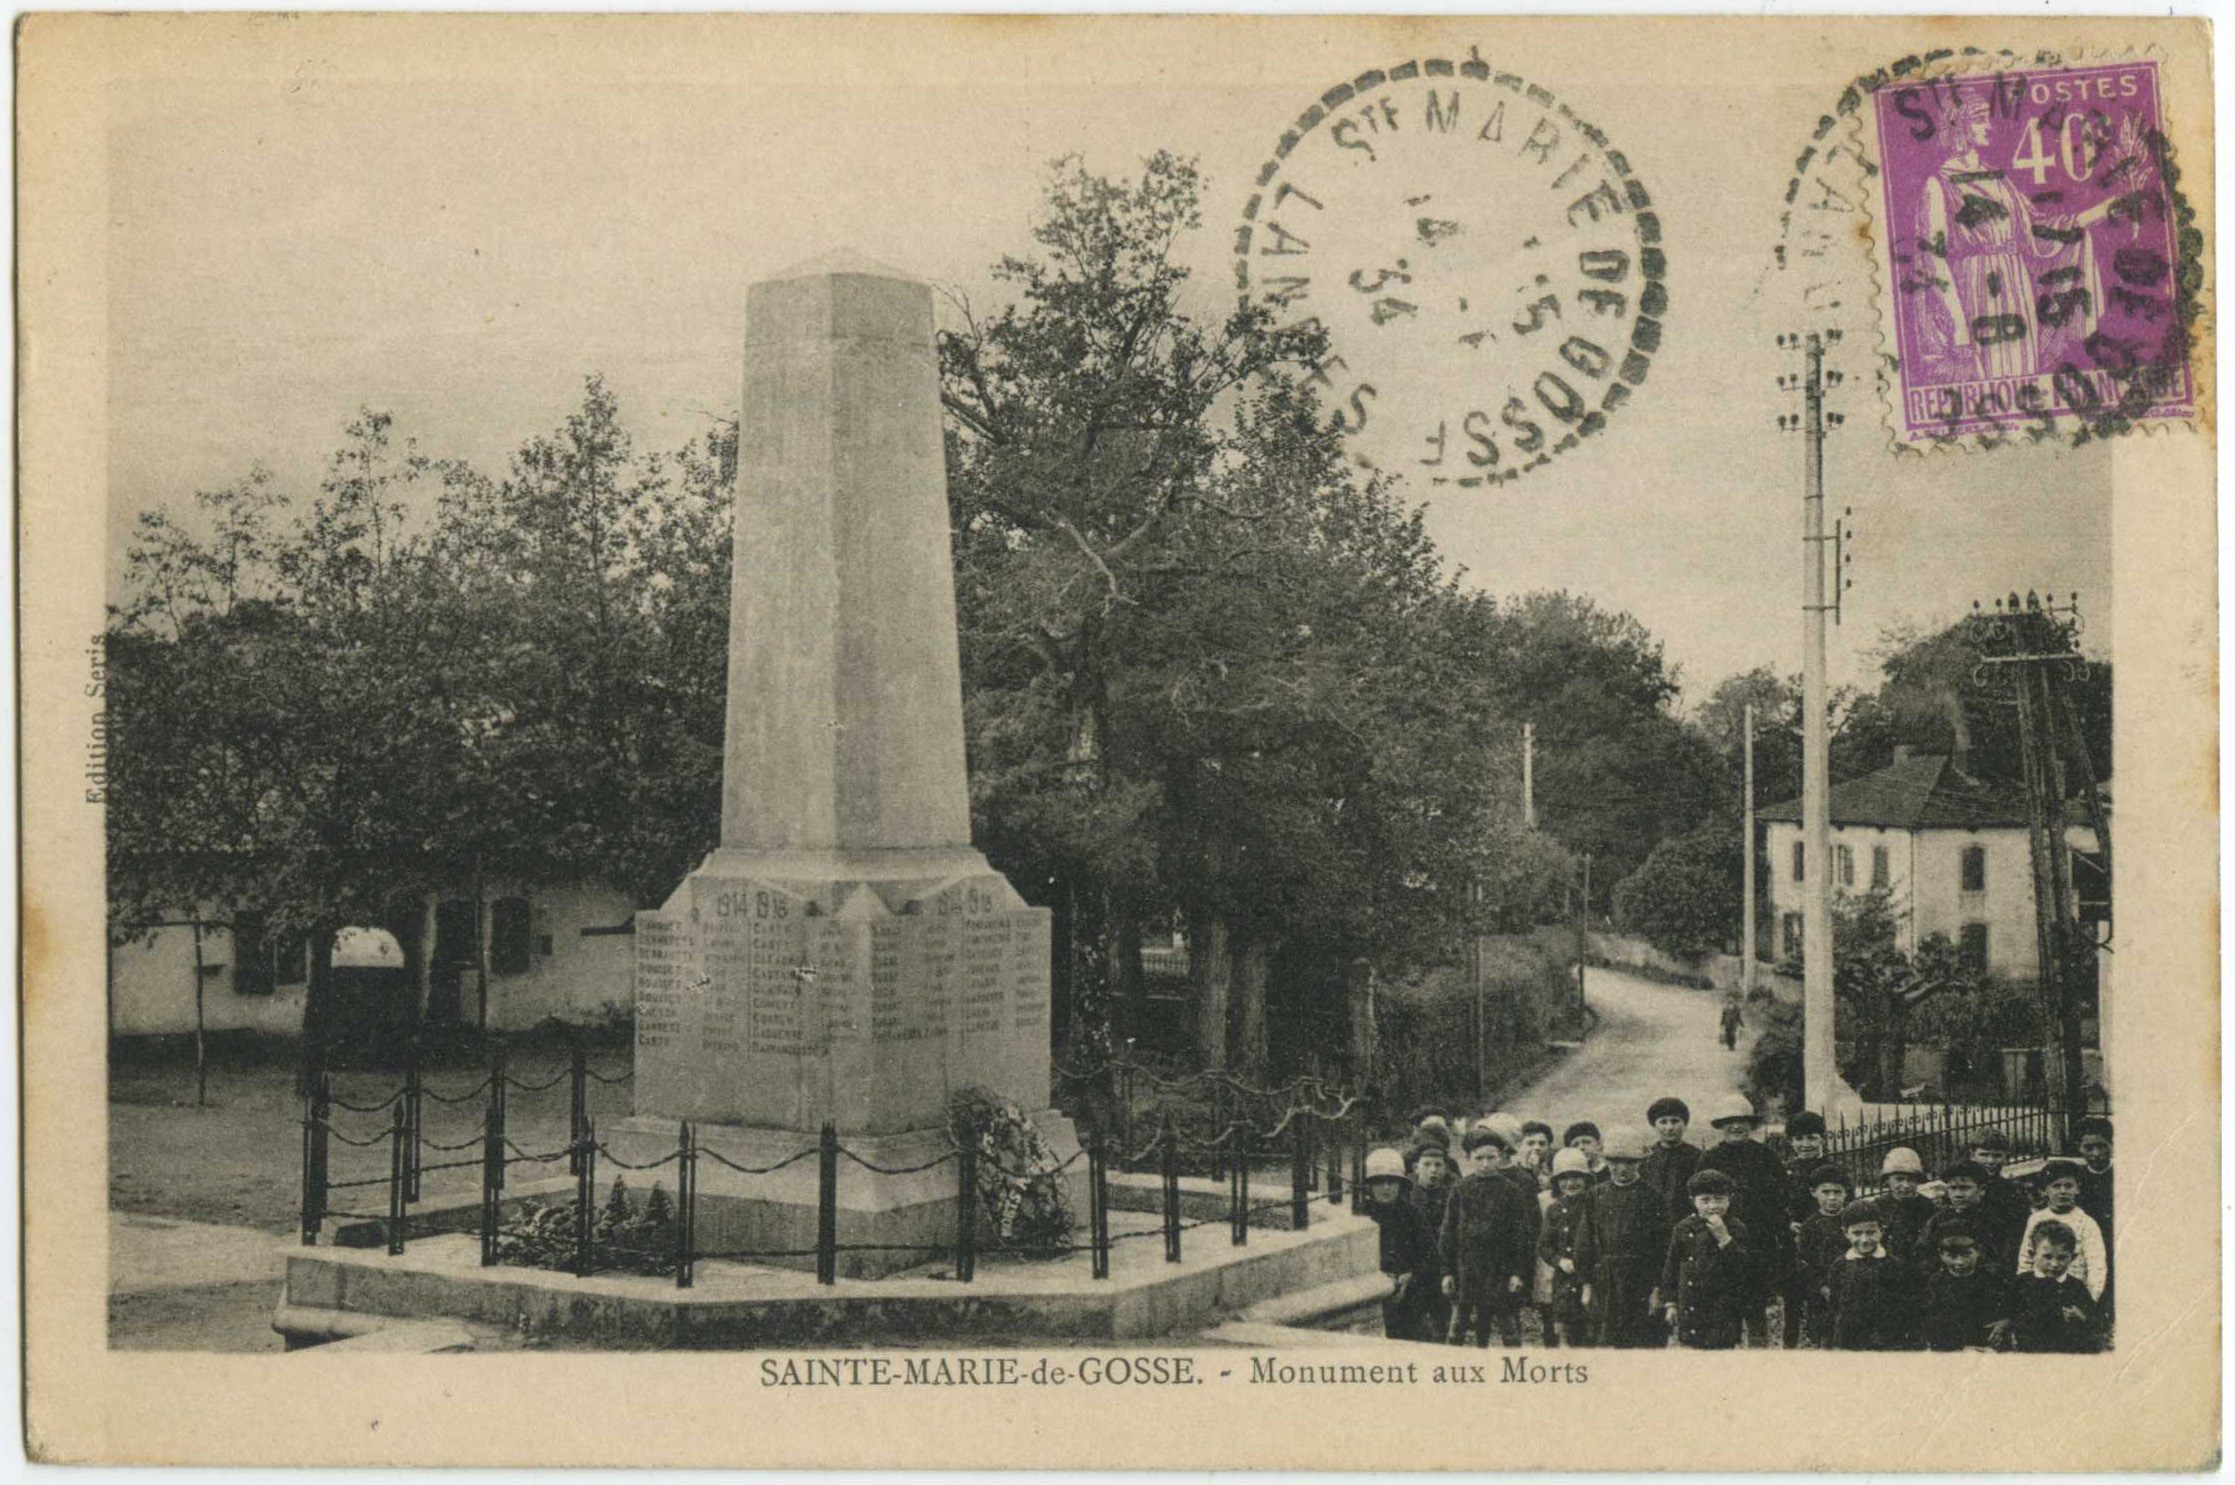 Sainte-Marie-de-Gosse - Monument aux Morts